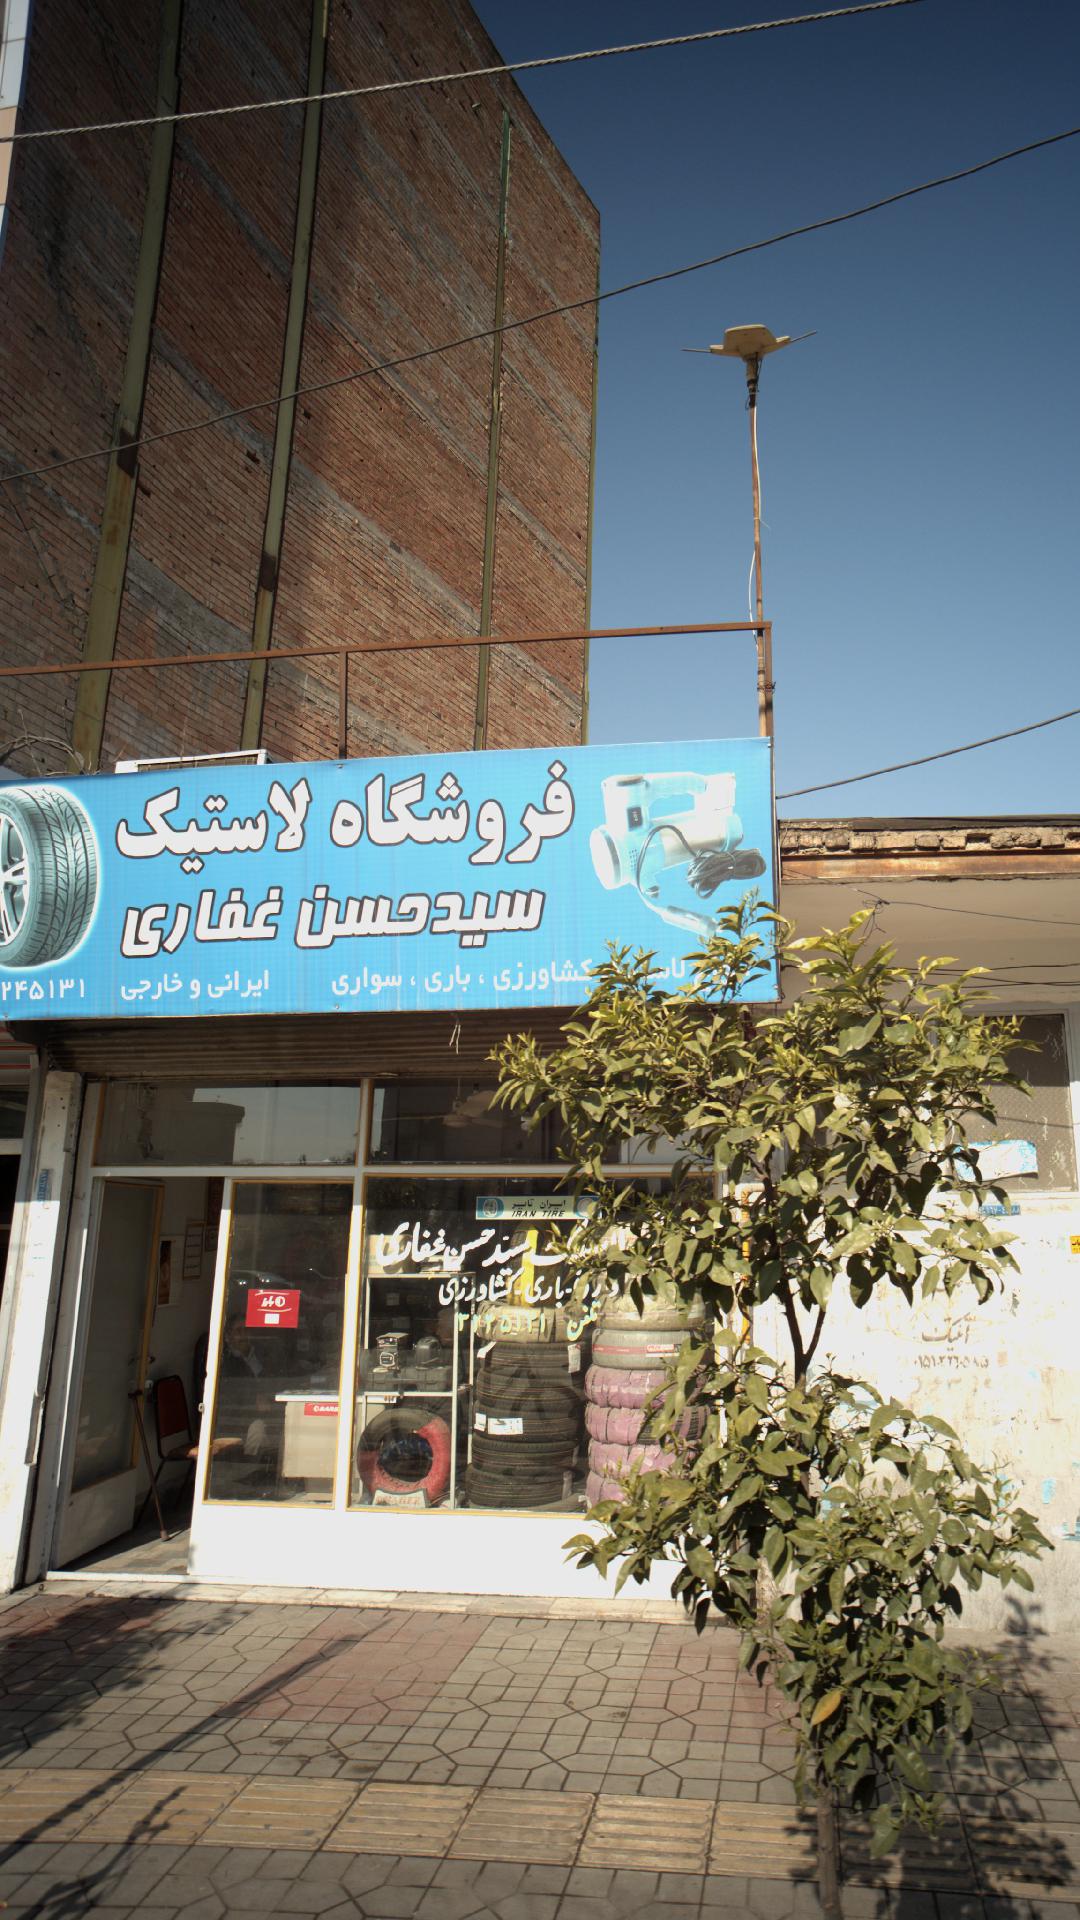 فروشگاه لاستیک سید حسن غفاری